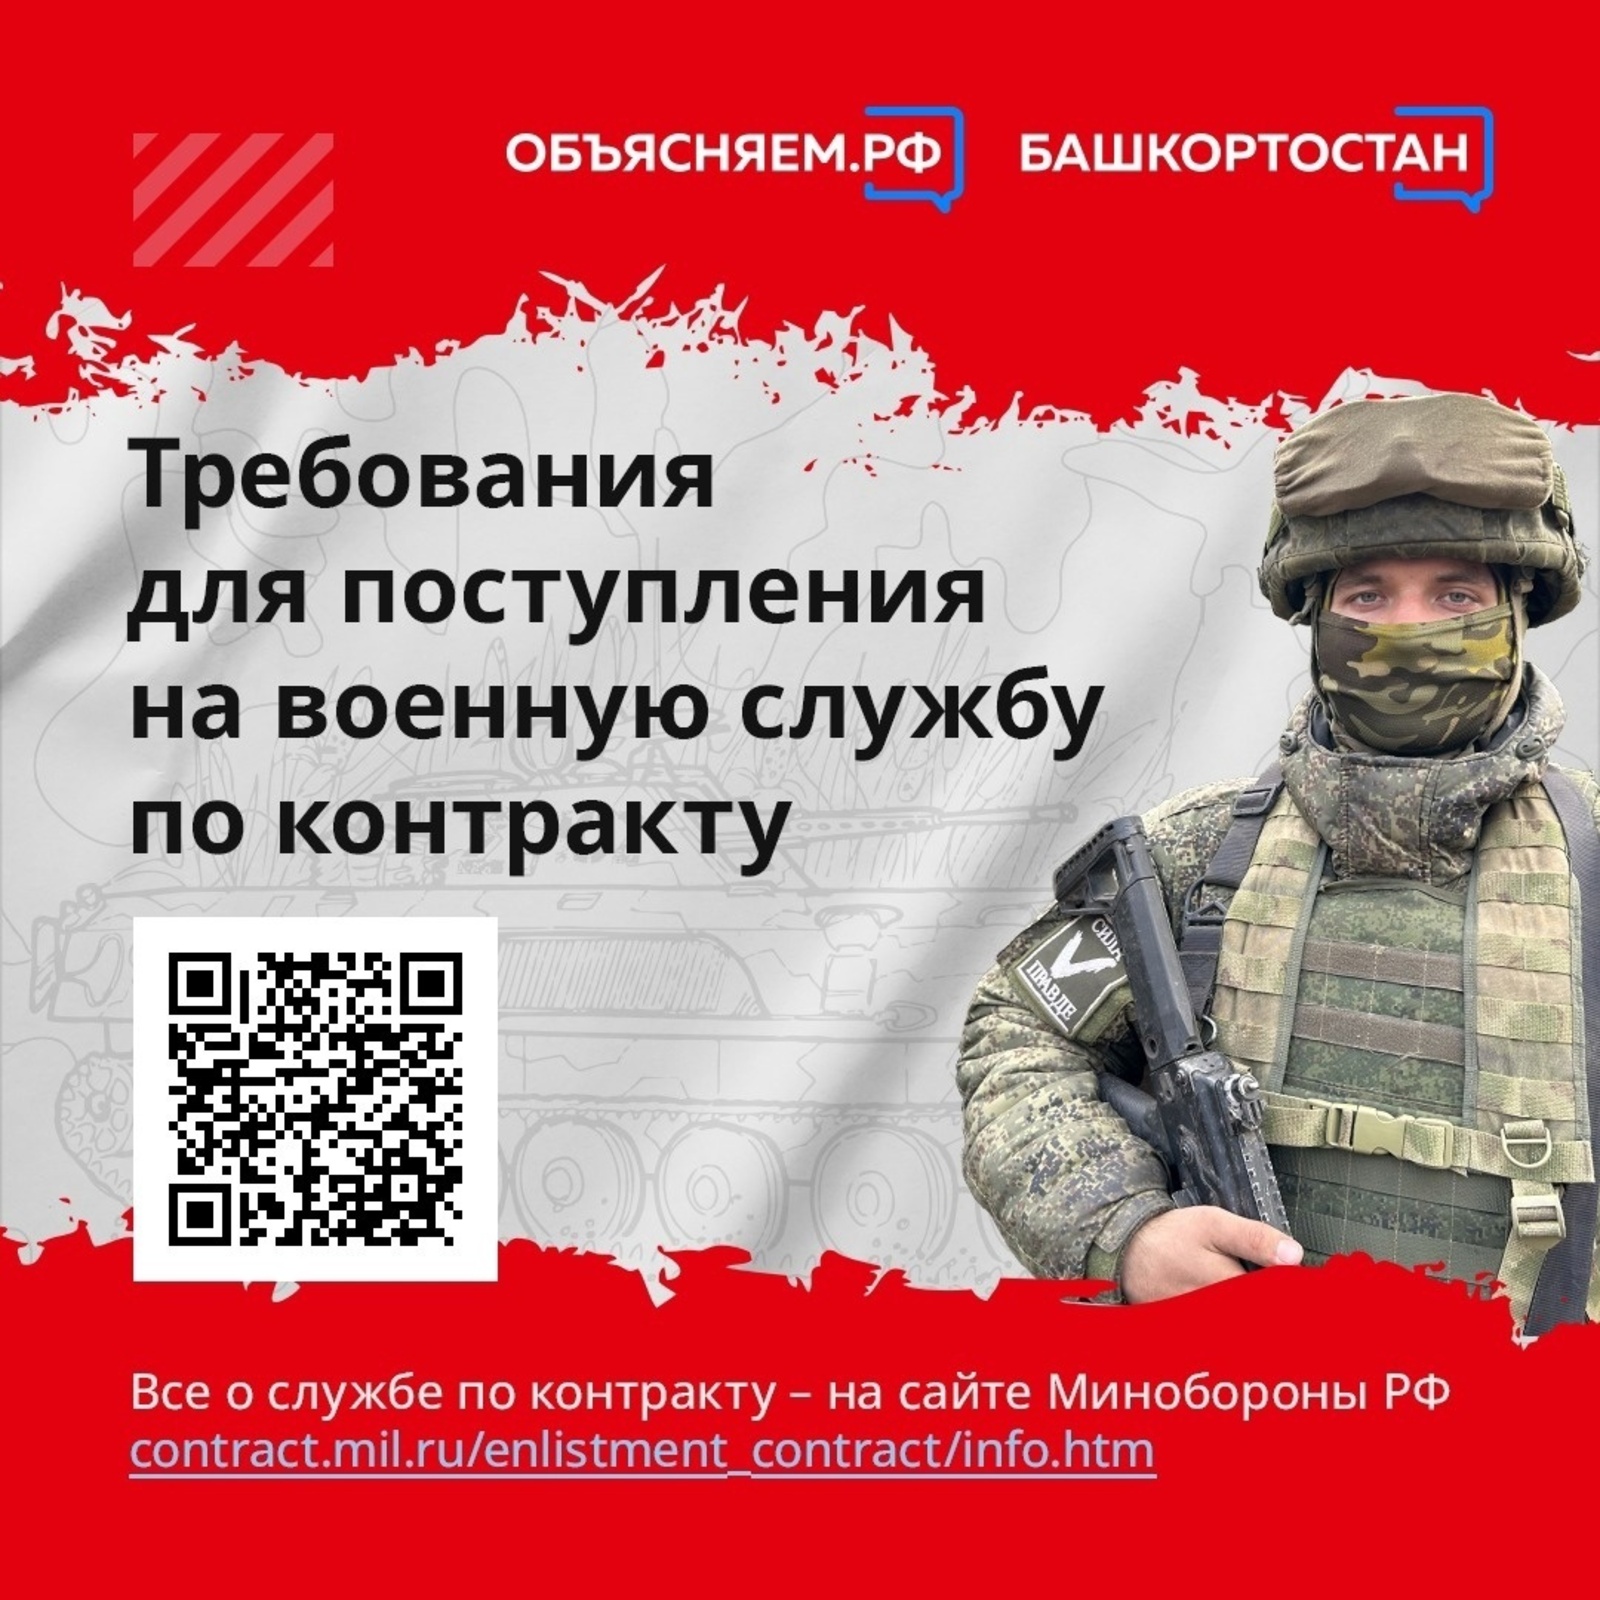 Каким требованиям нужно соответствовать жителю Башкортостана, чтобы поступить на военную службу по контракту?